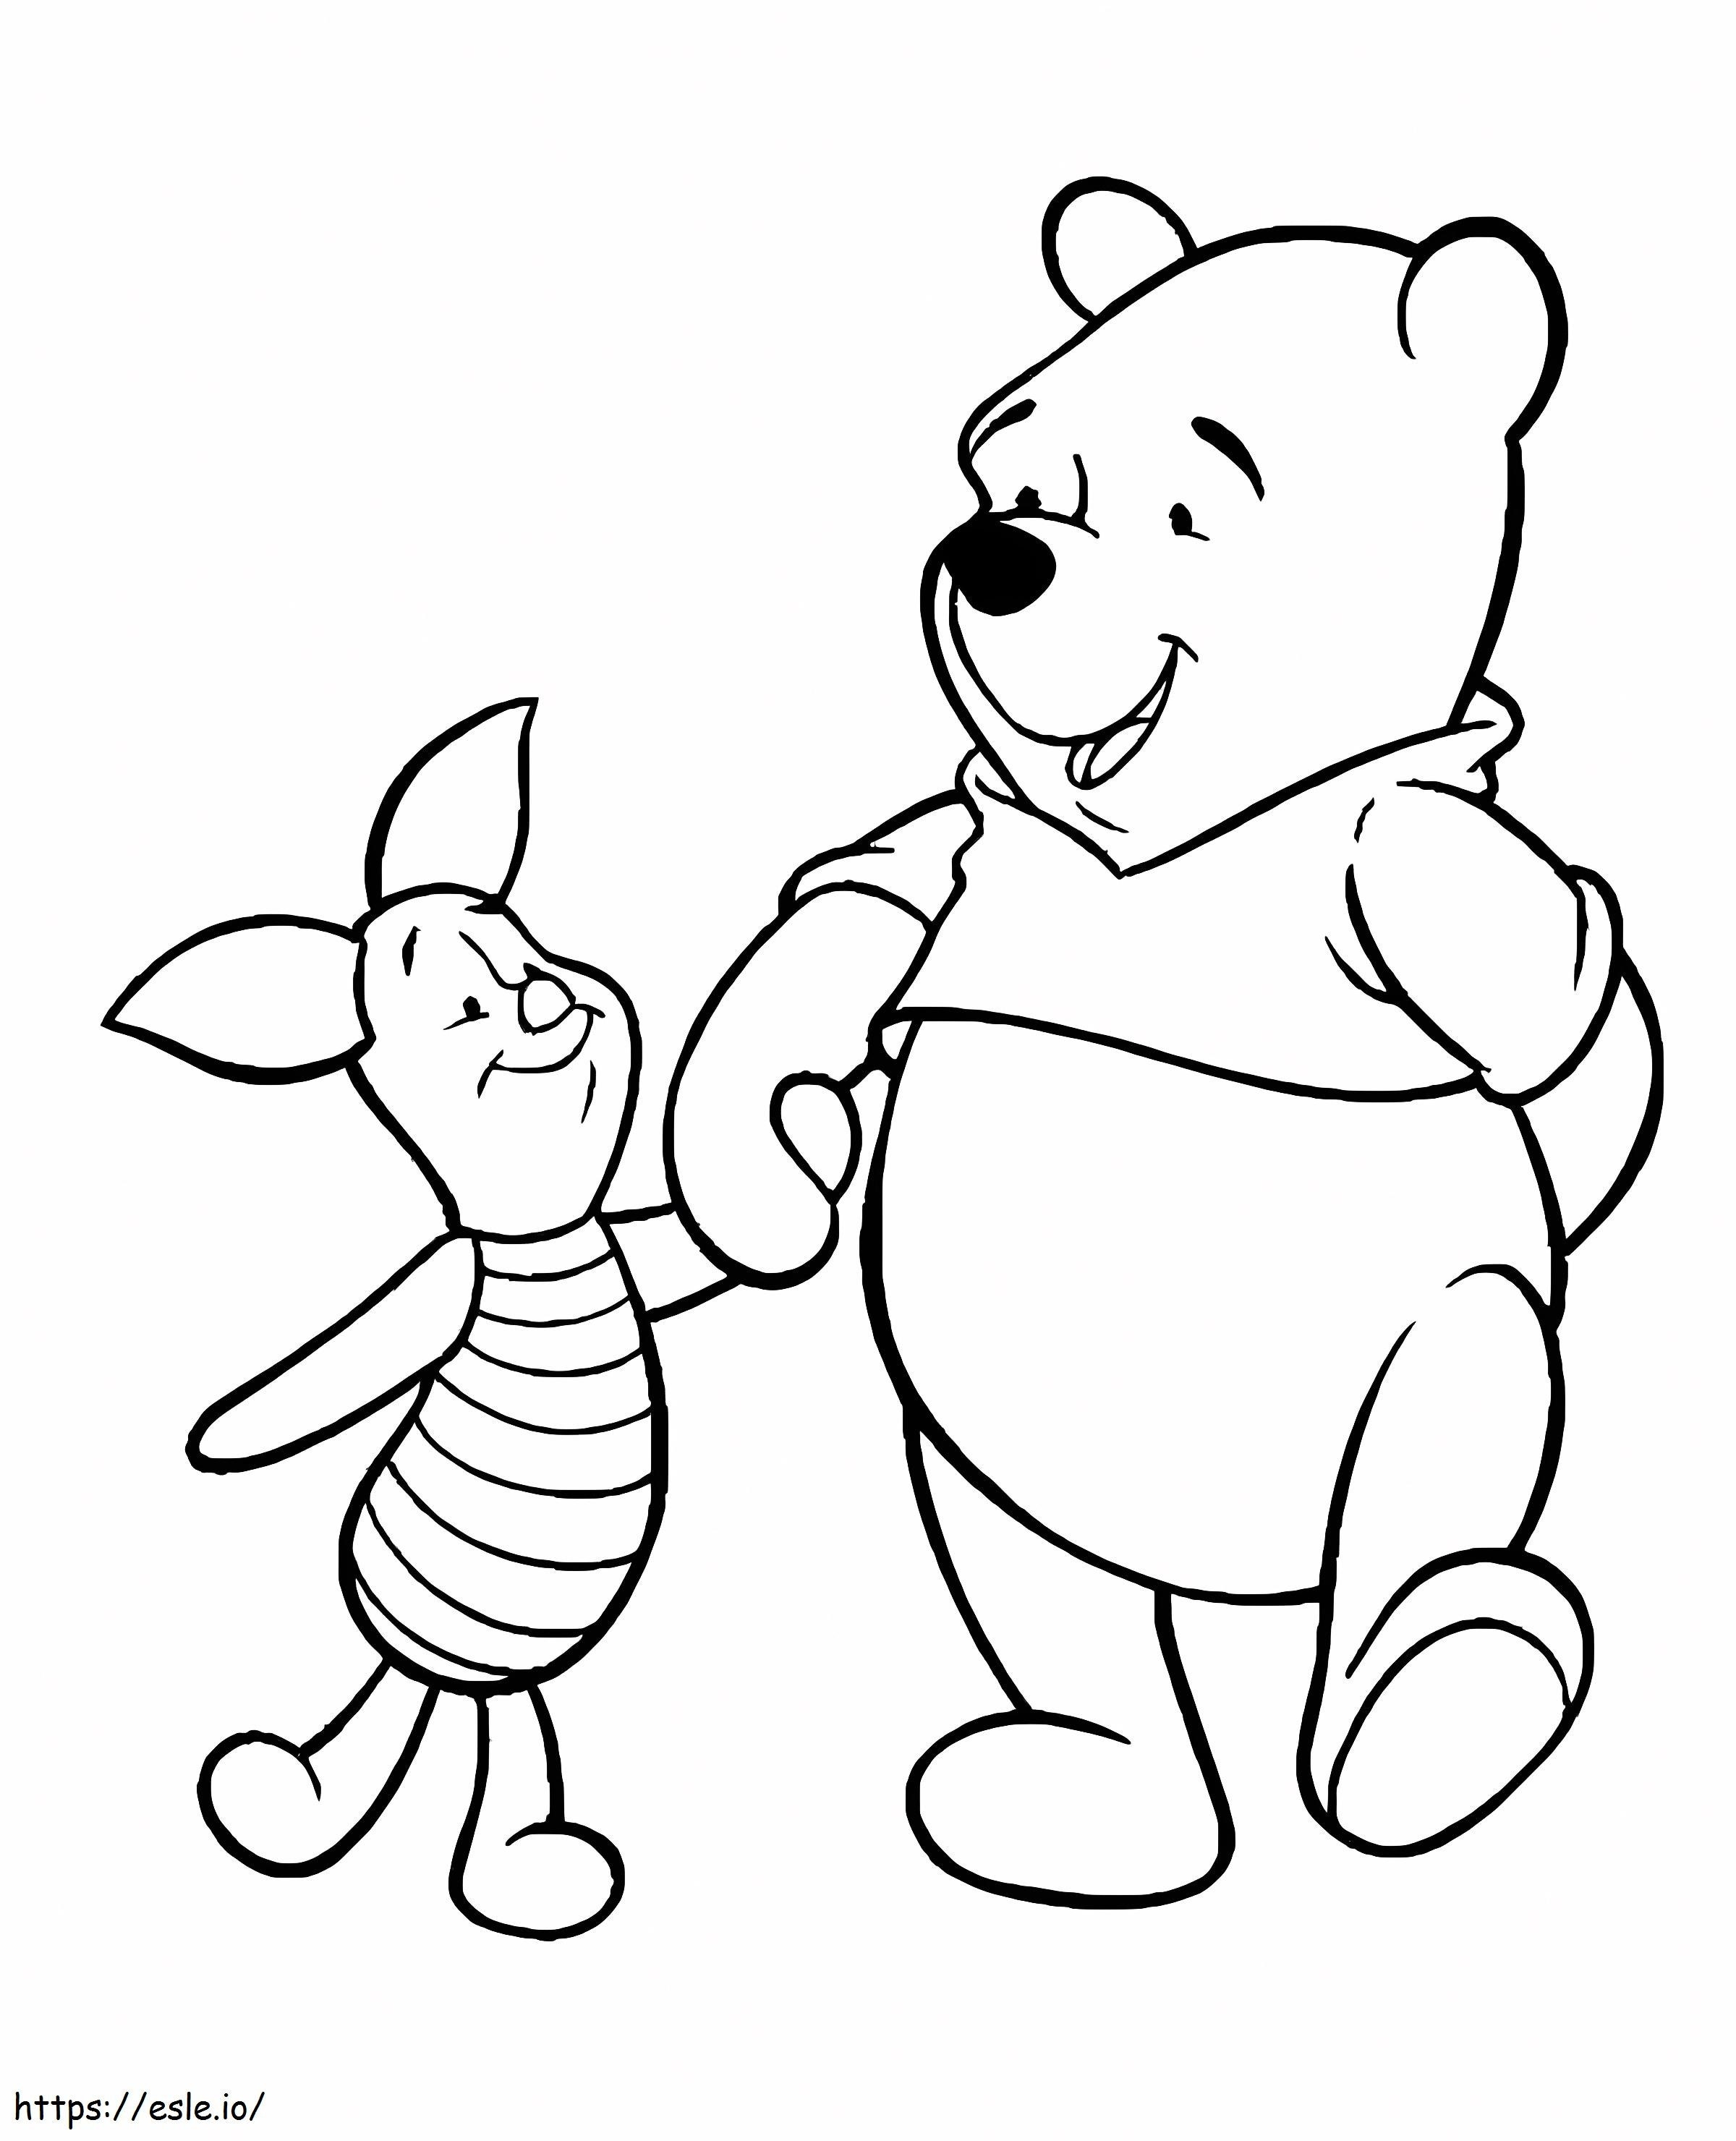 Piglet y Pooh tomados de la mano para colorear